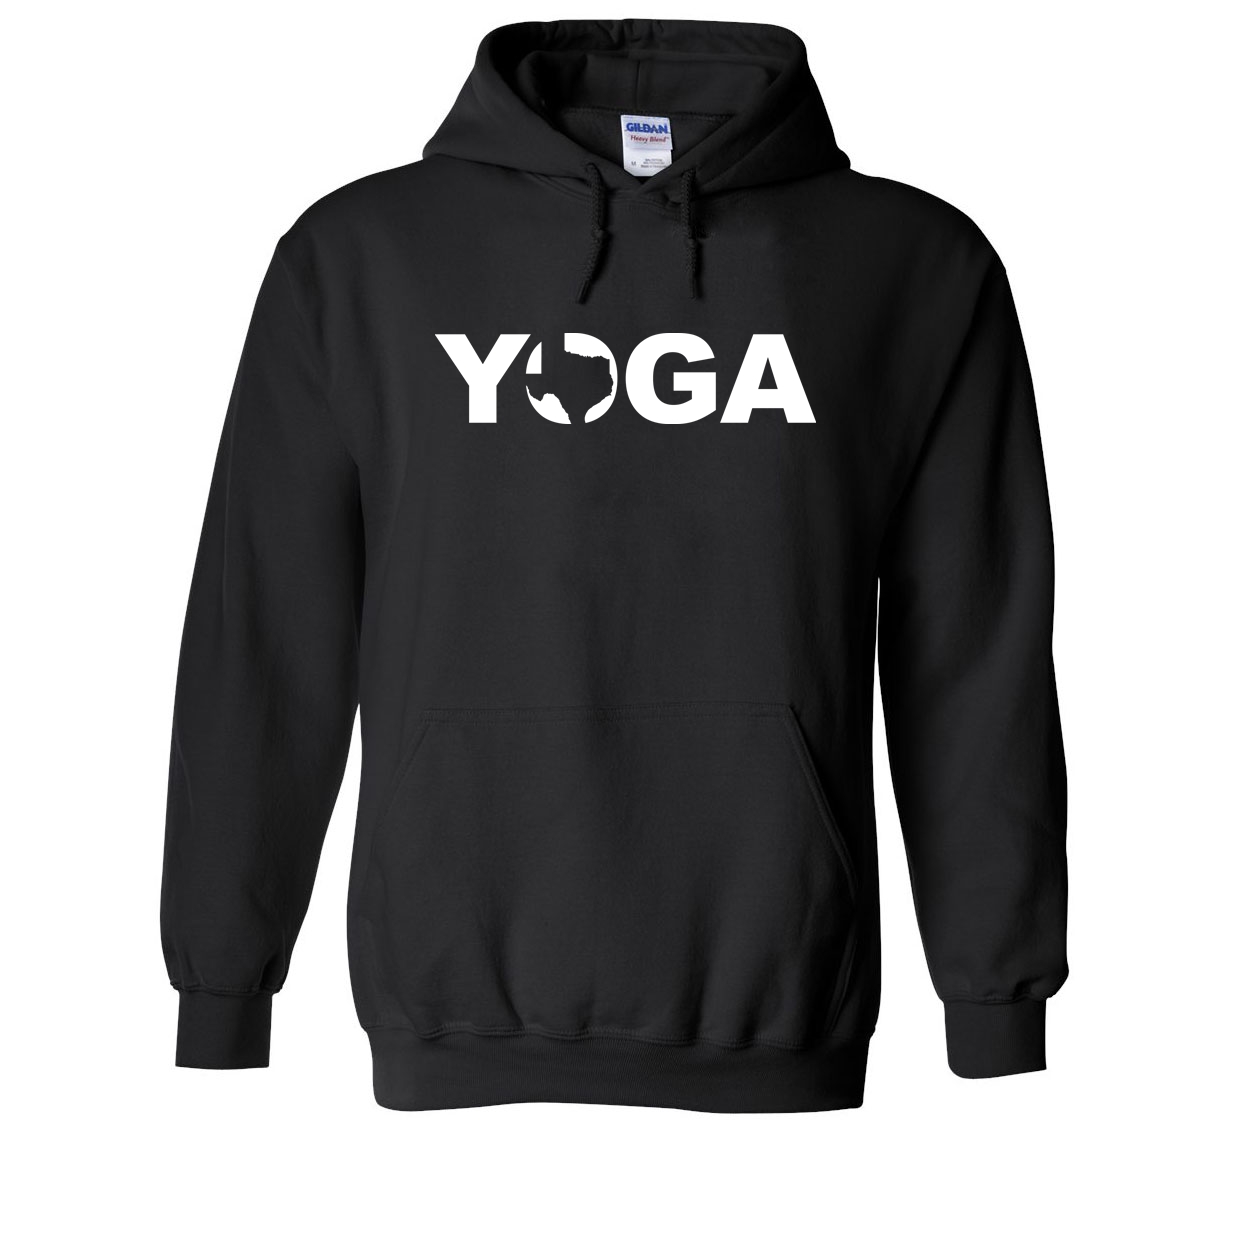 Yoga Texas Classic Sweatshirt Black (White Logo)